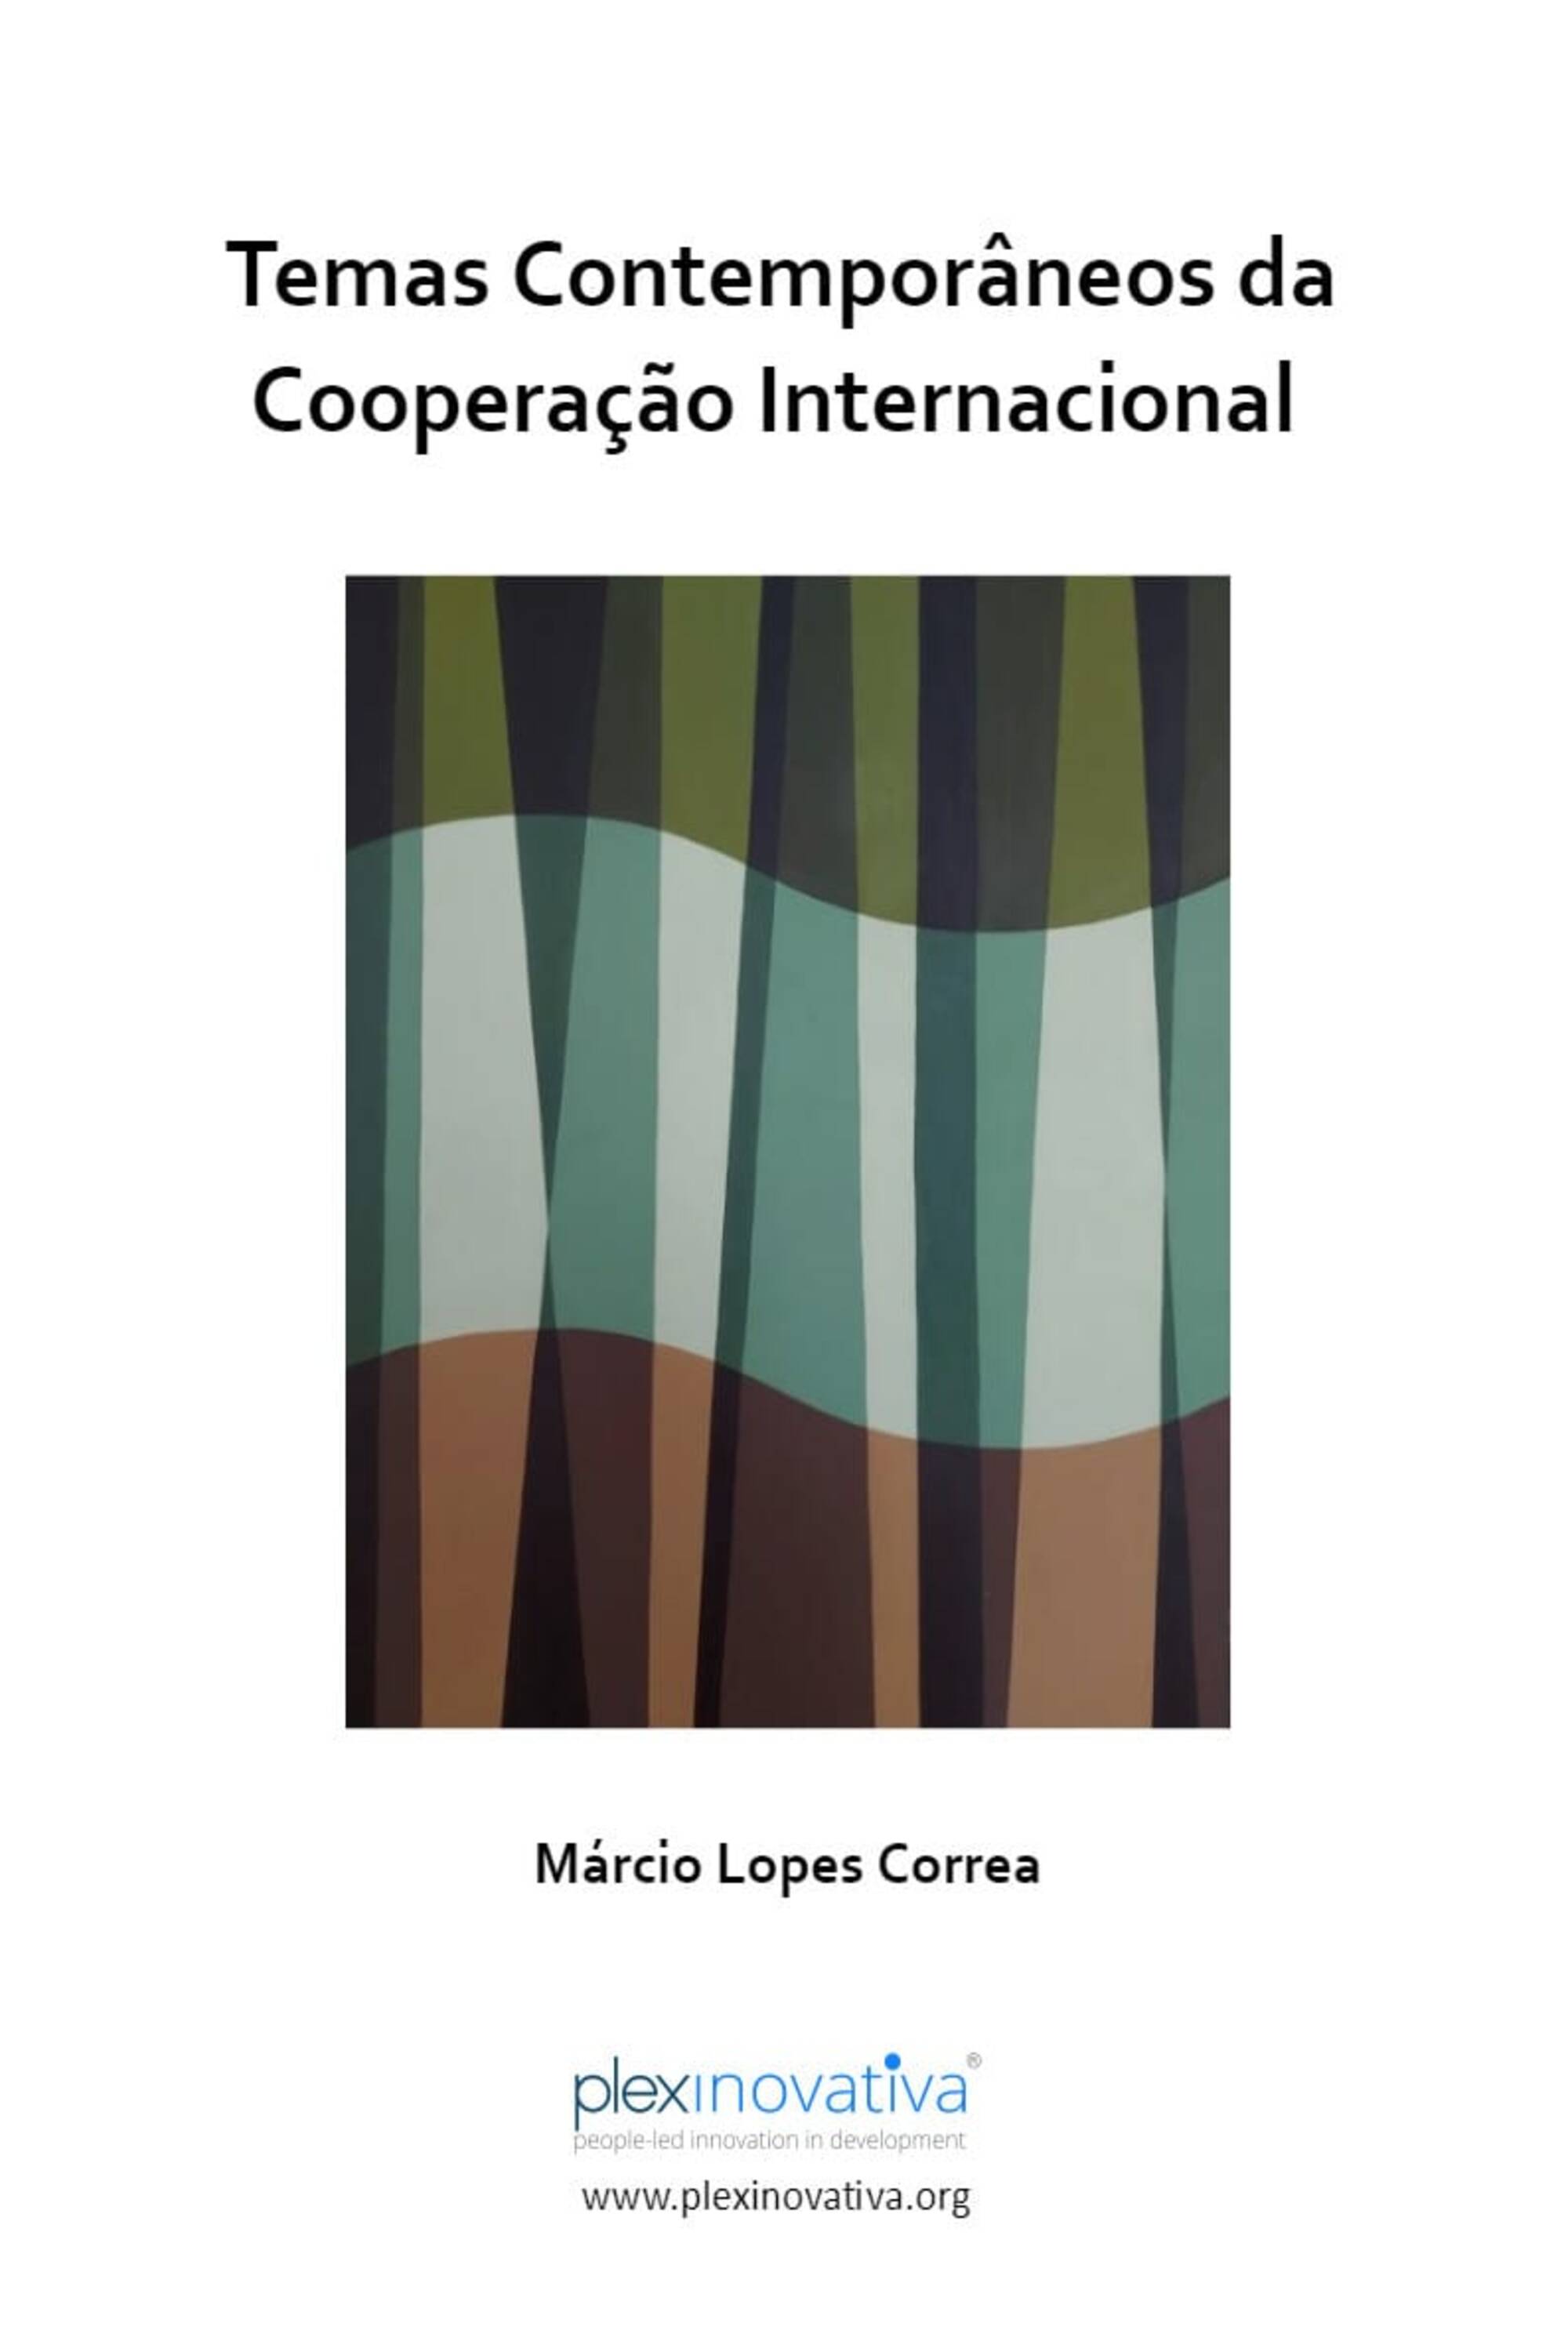 Temas Contemporâneos da Cooperação Internacional